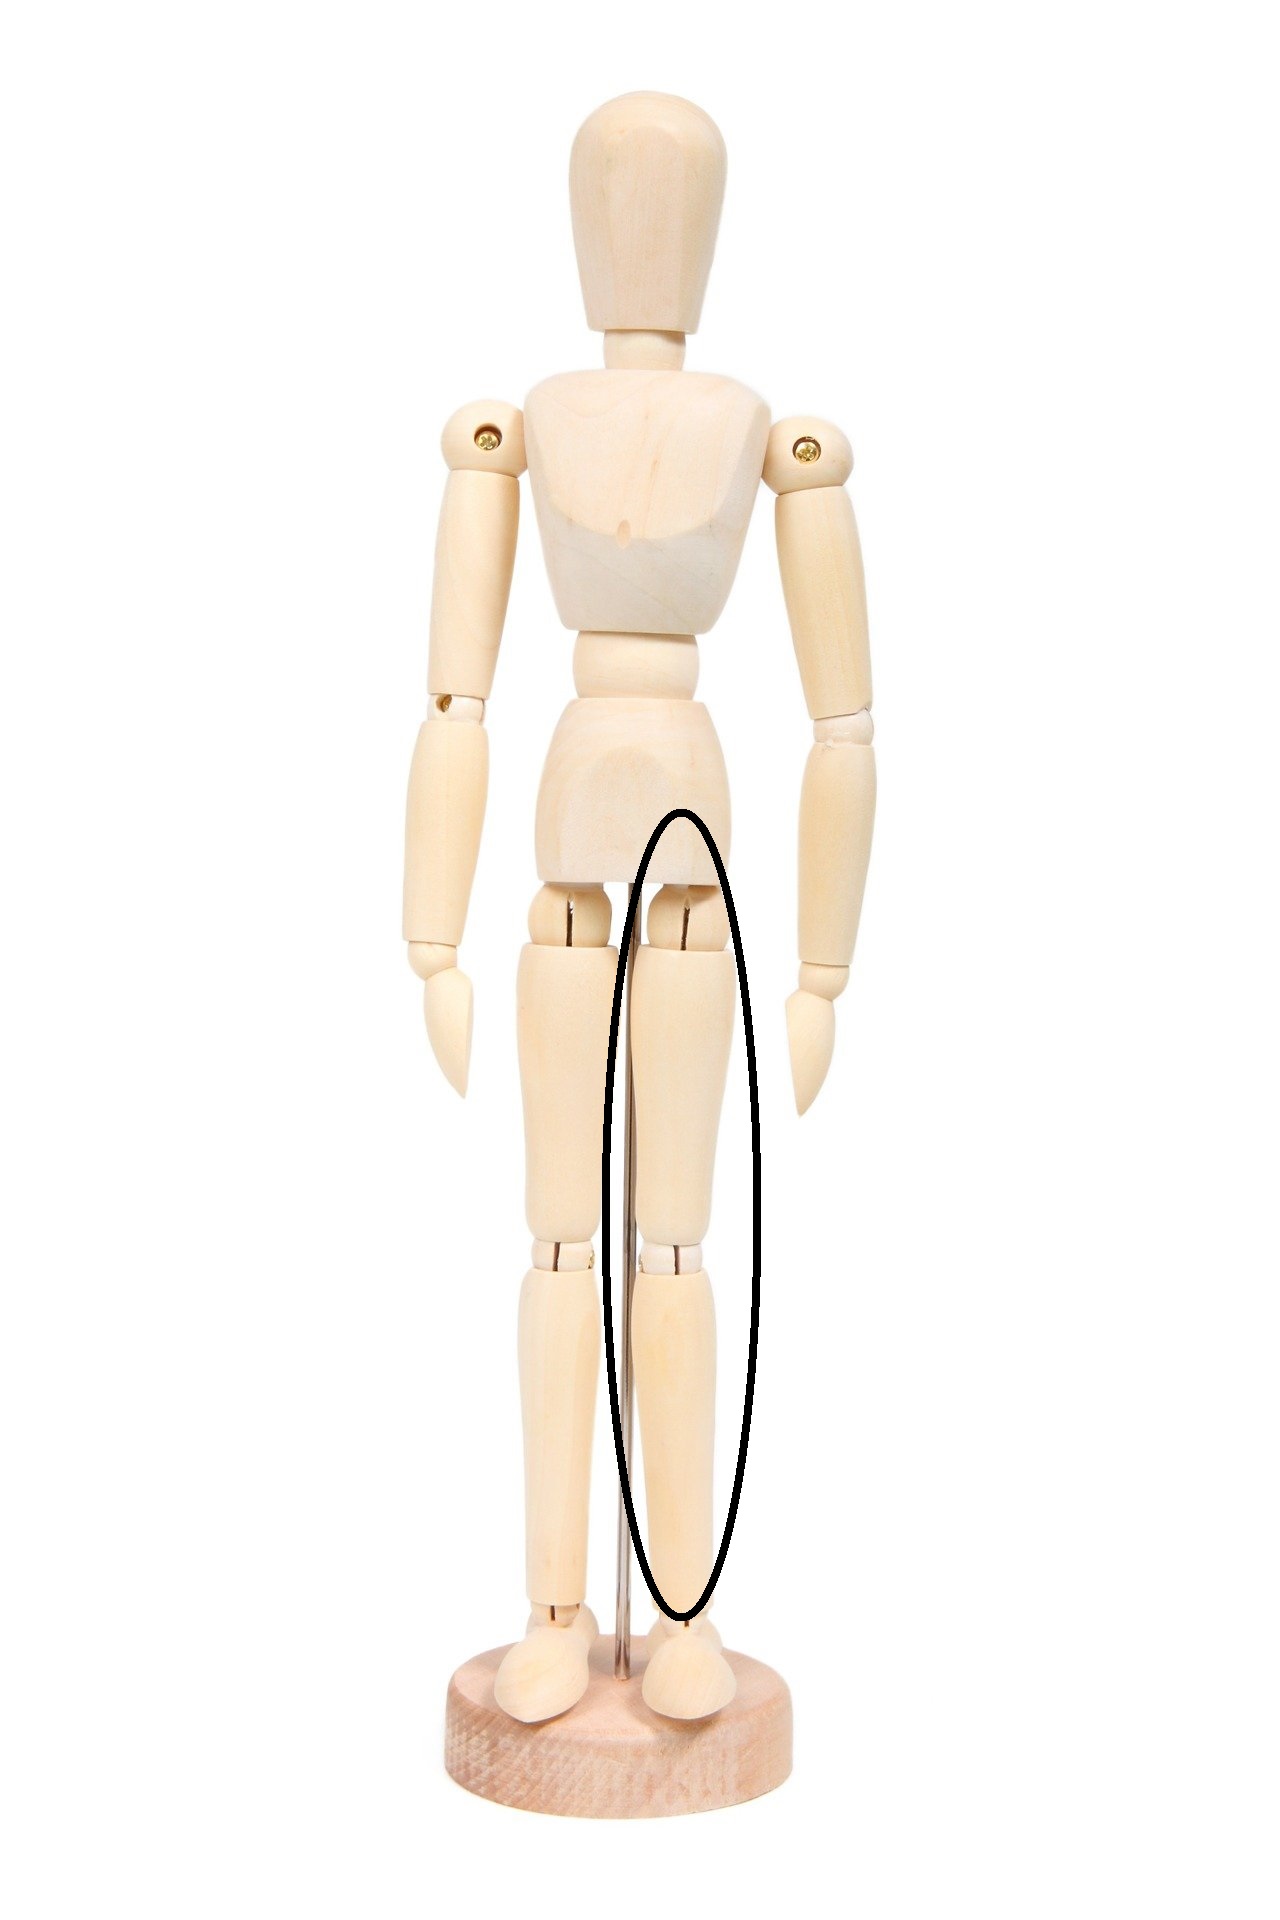 La imagen muestra la pierna de un maniquí